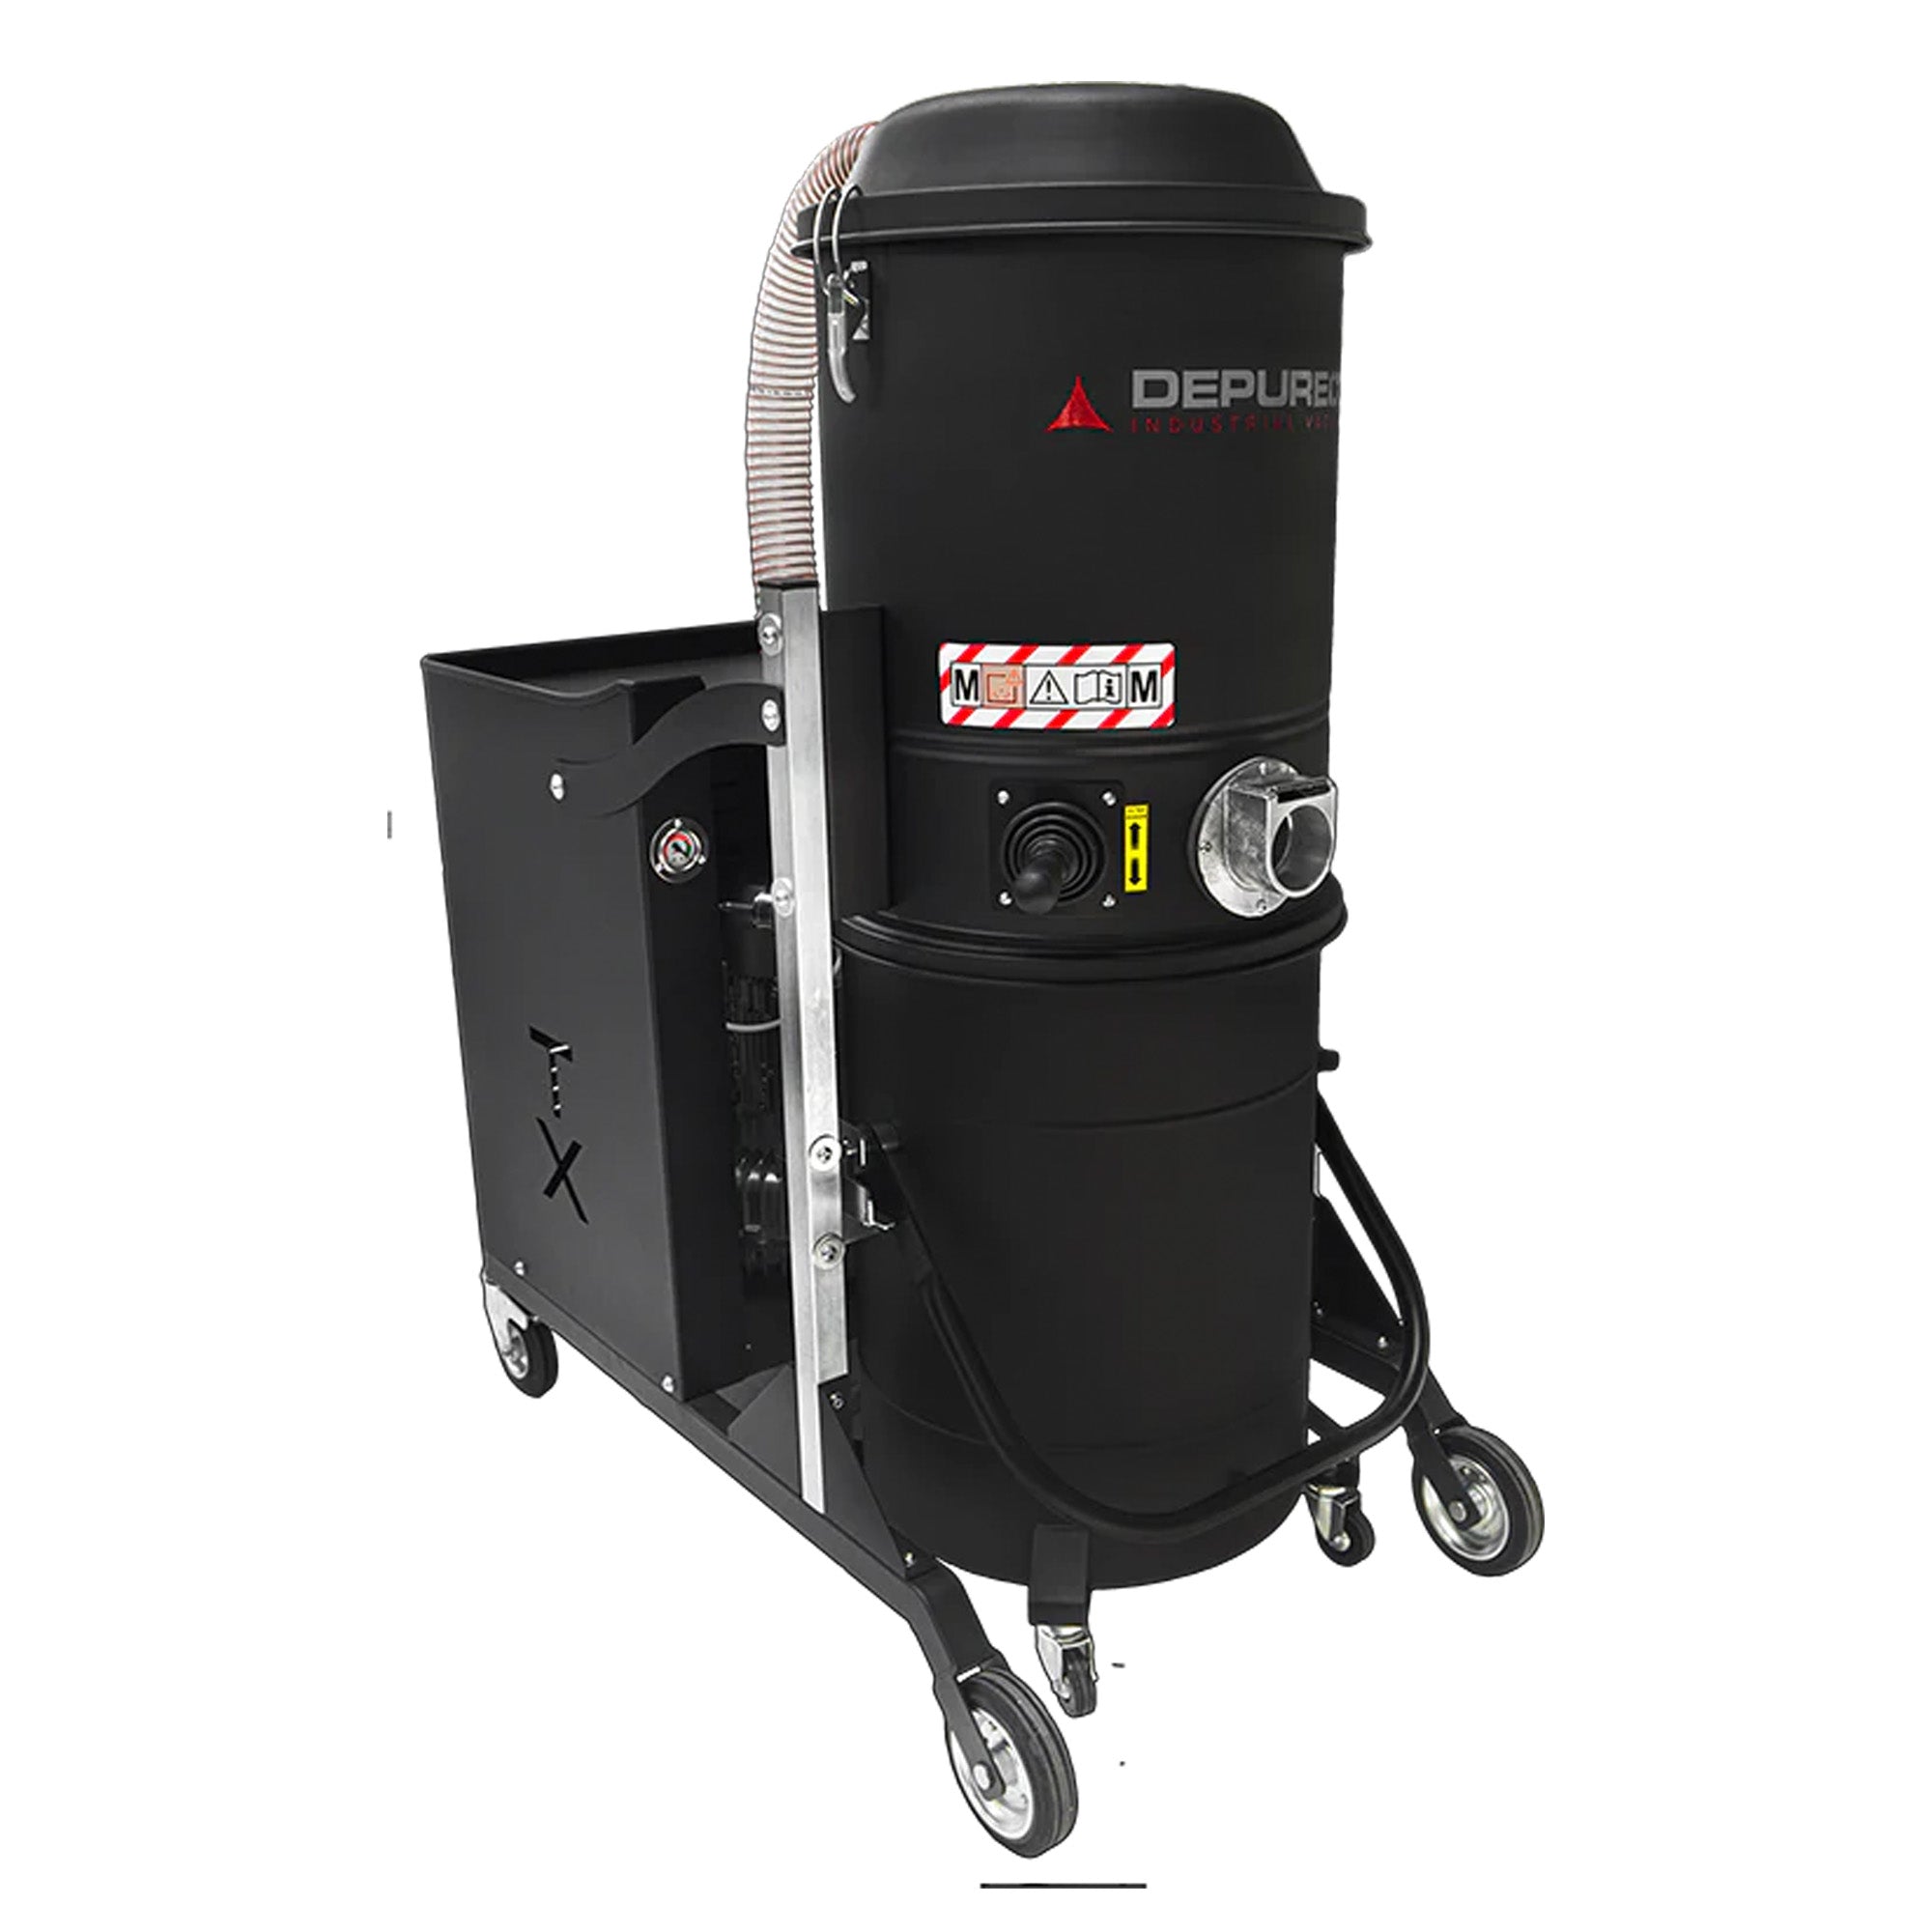 Depureco TX 400 P Three-Phase Industrial Vacuum Cleaner